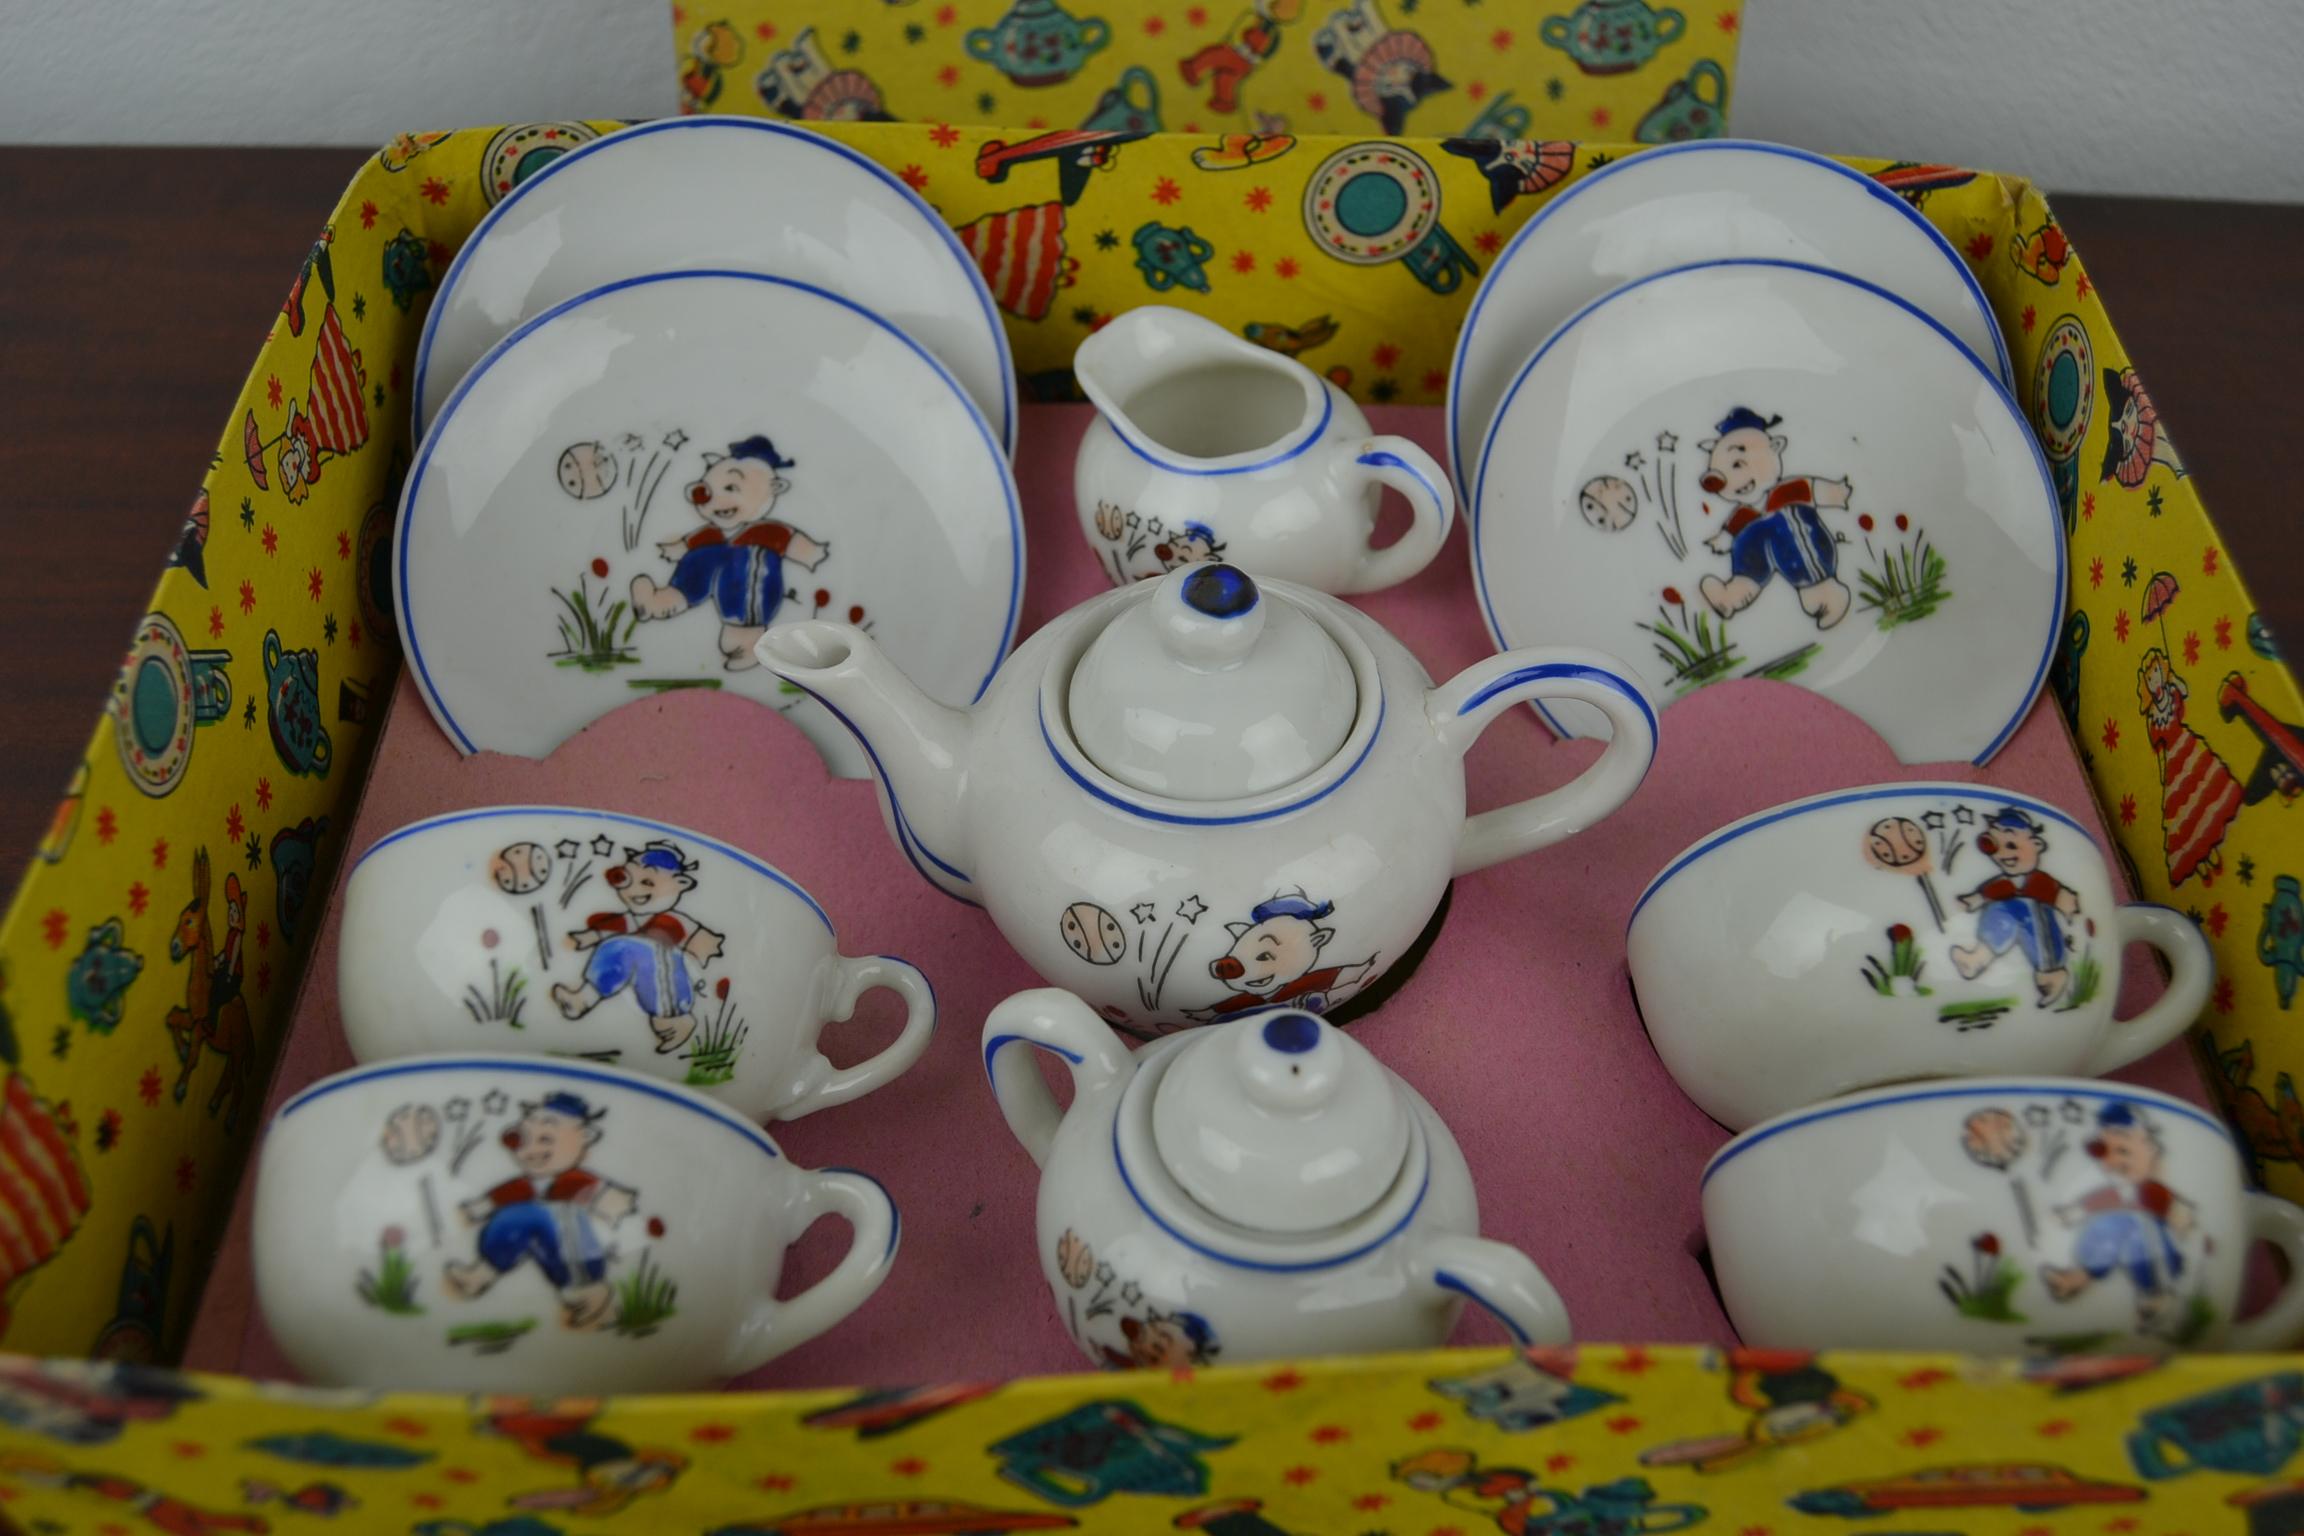 Porcelain Tea Set for Children, Pig Toy Tea Set, Foreign, Made in Japan 12